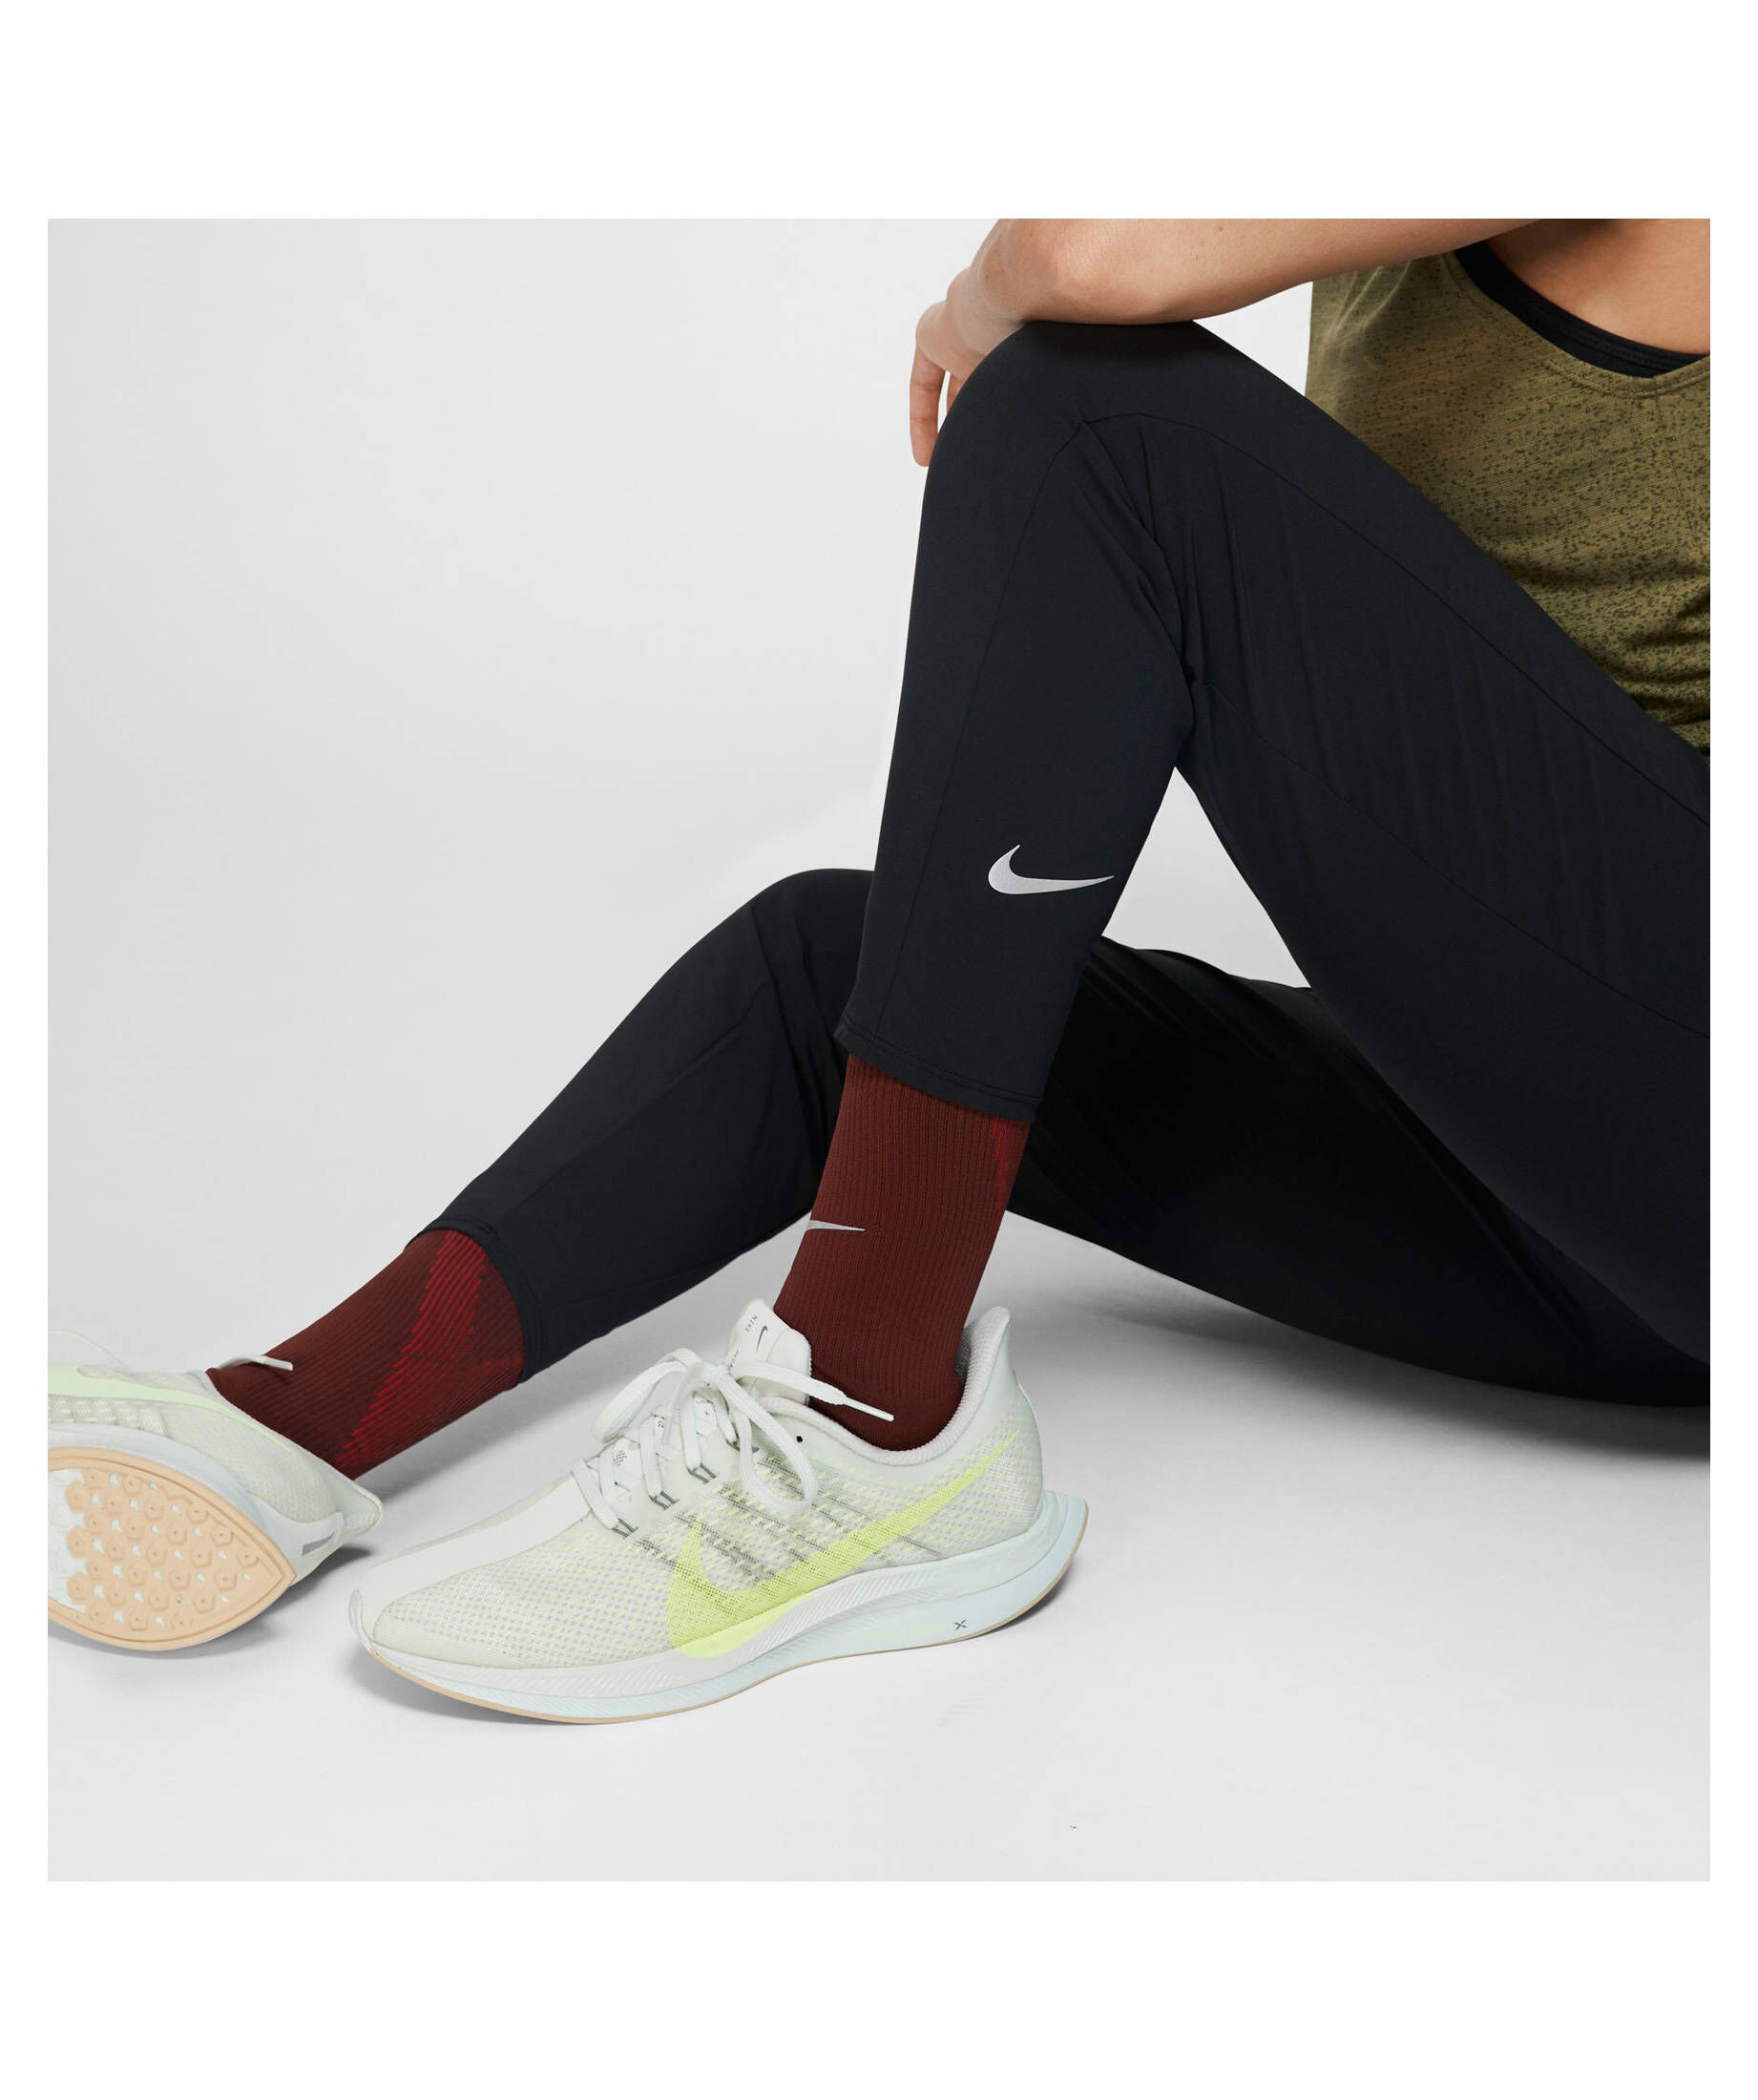 Nike Damen Hose "Nike Essentials Women's Pants" | engelhorn